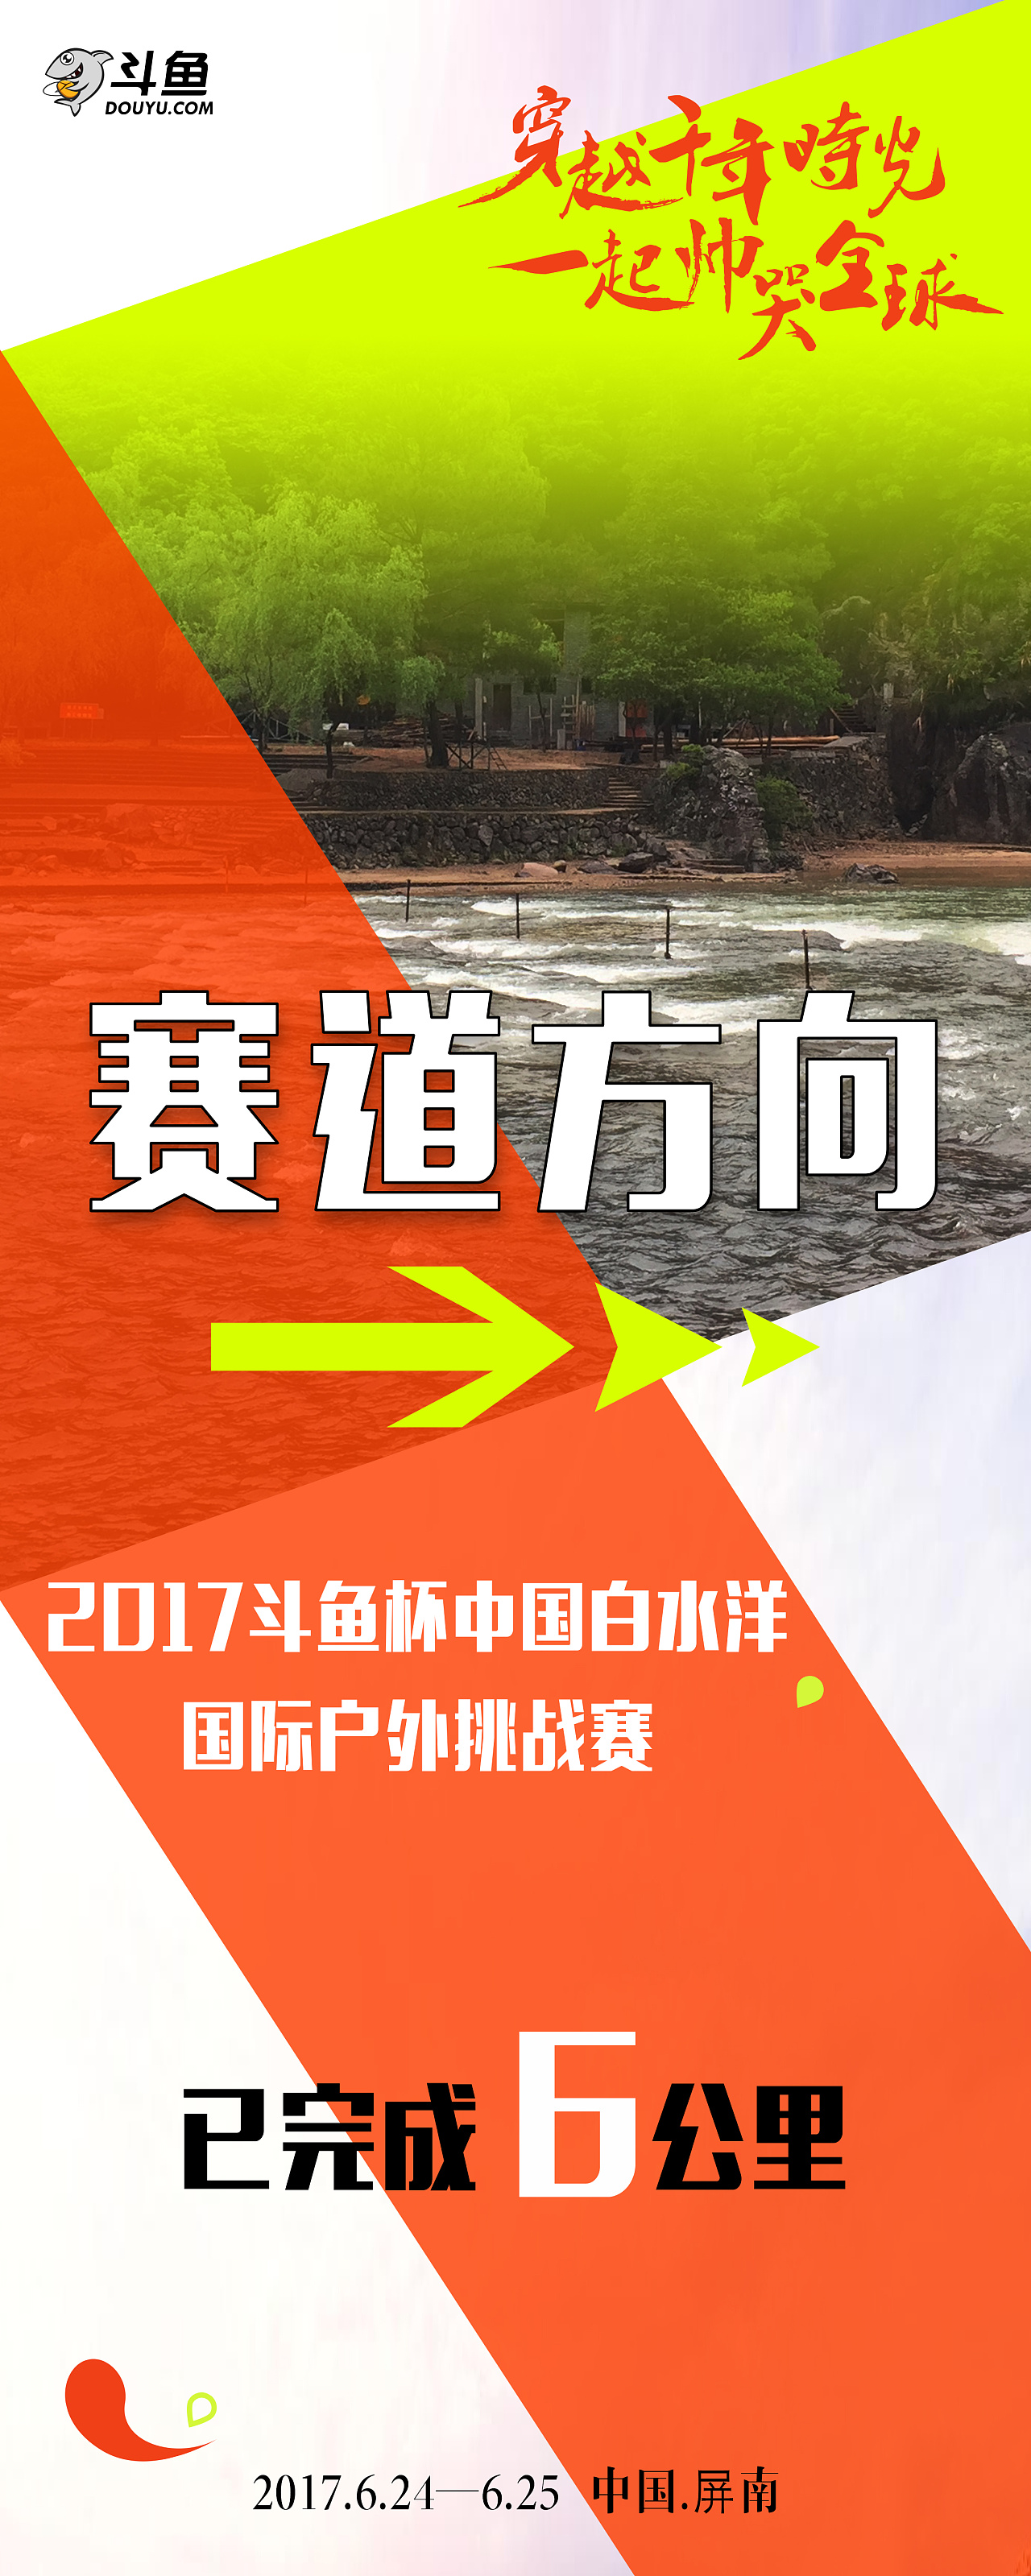 2017斗鱼杯中国白水洋国际户外挑战赛主视觉